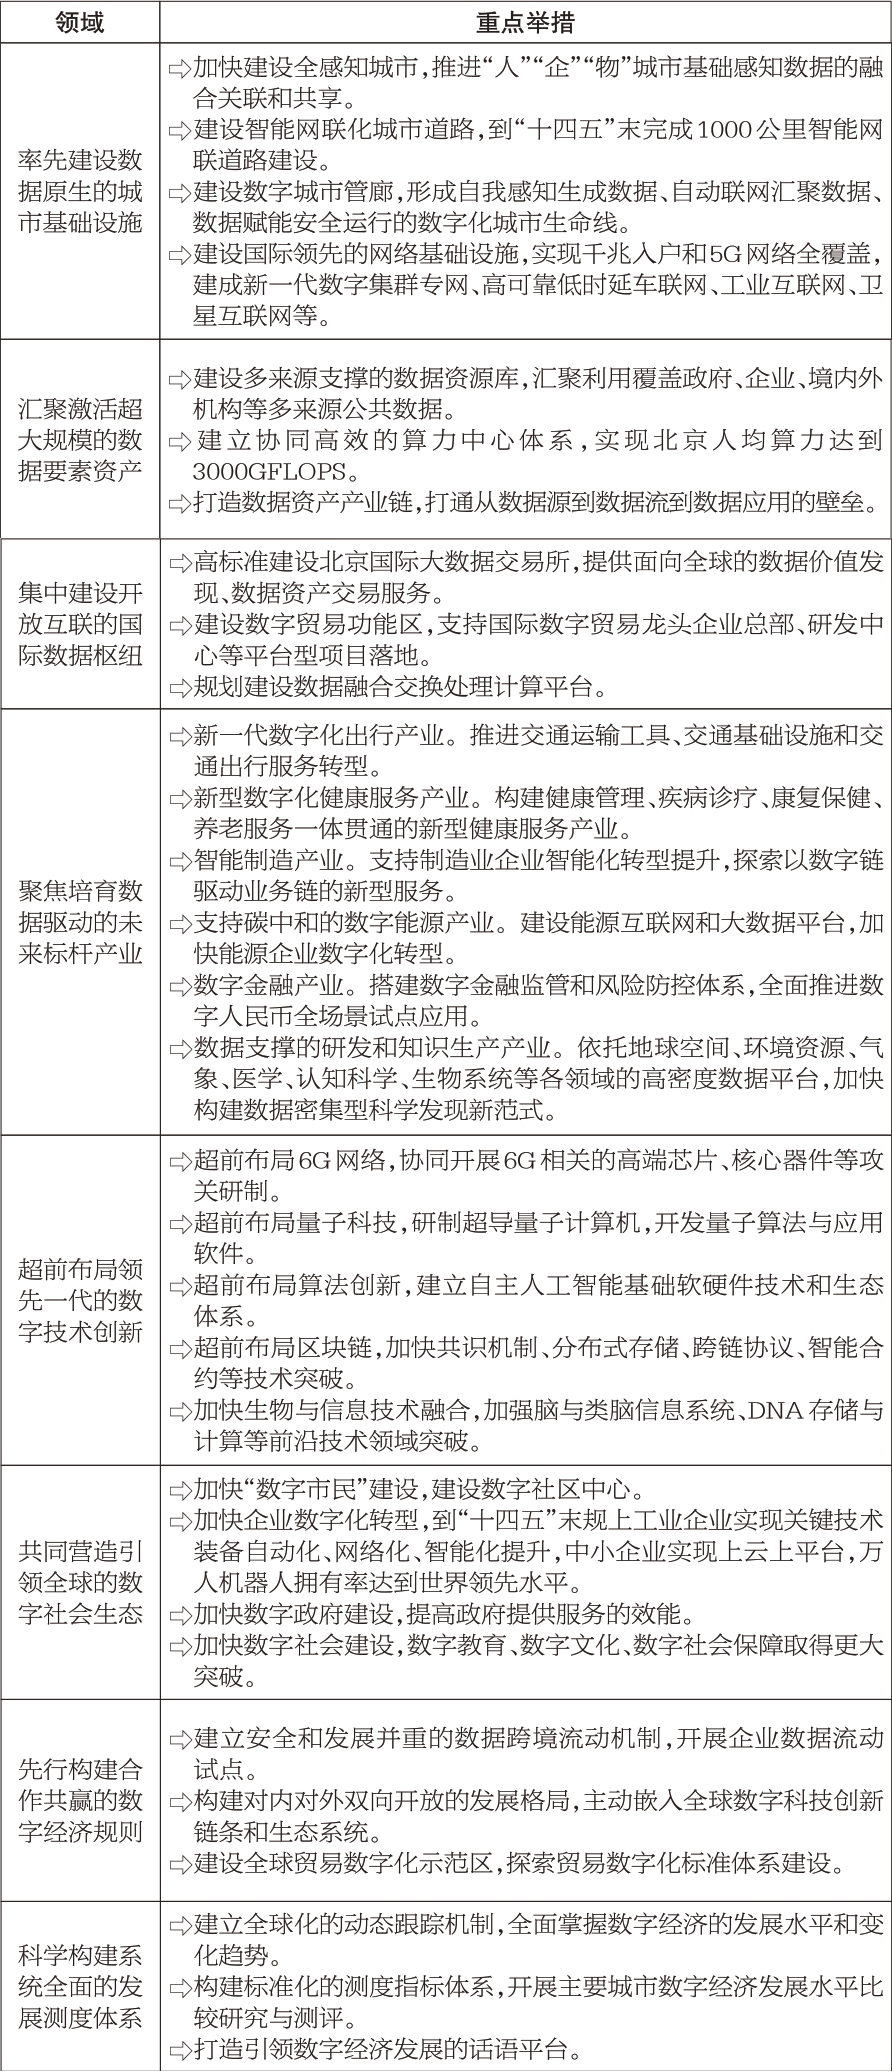 北京市计划报告发布，经济生态民生指标公布